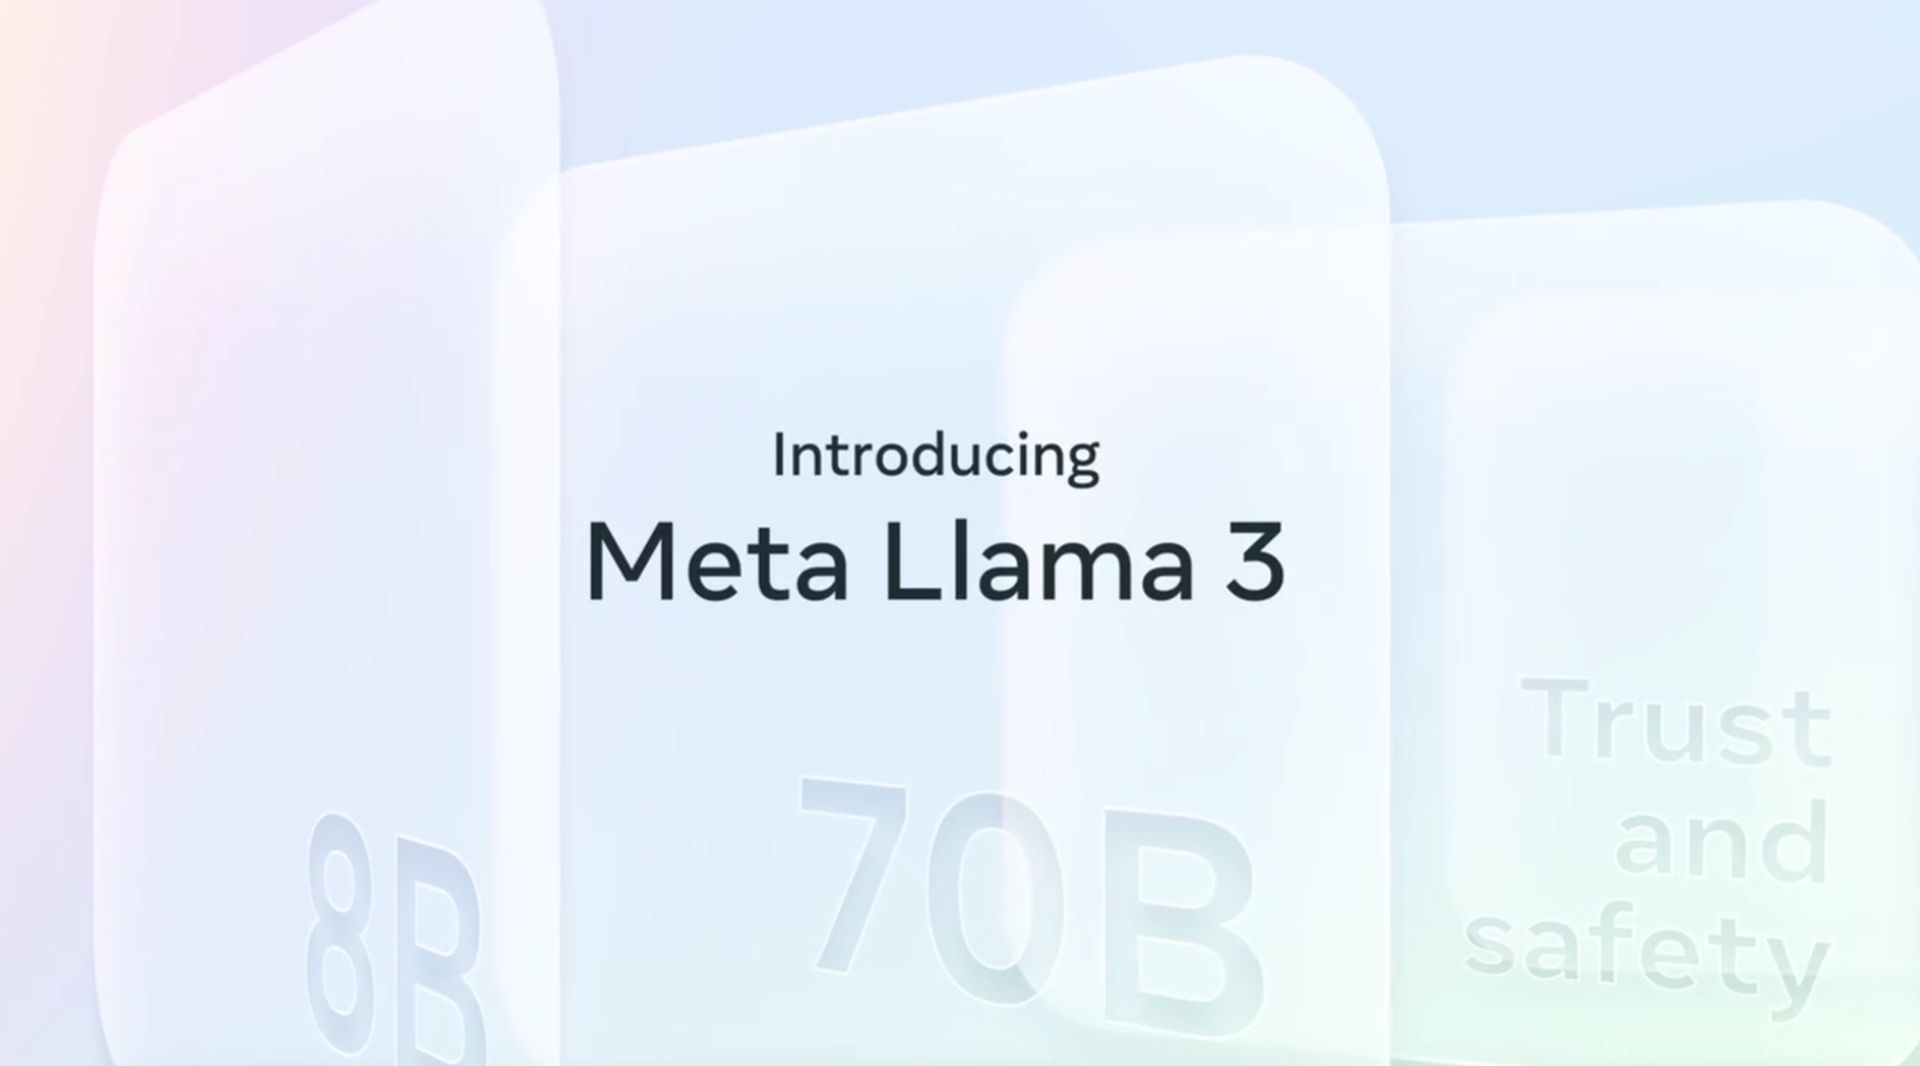 Die Llama 3-Benchmark-Ergebnisse von Meta AI sind hier